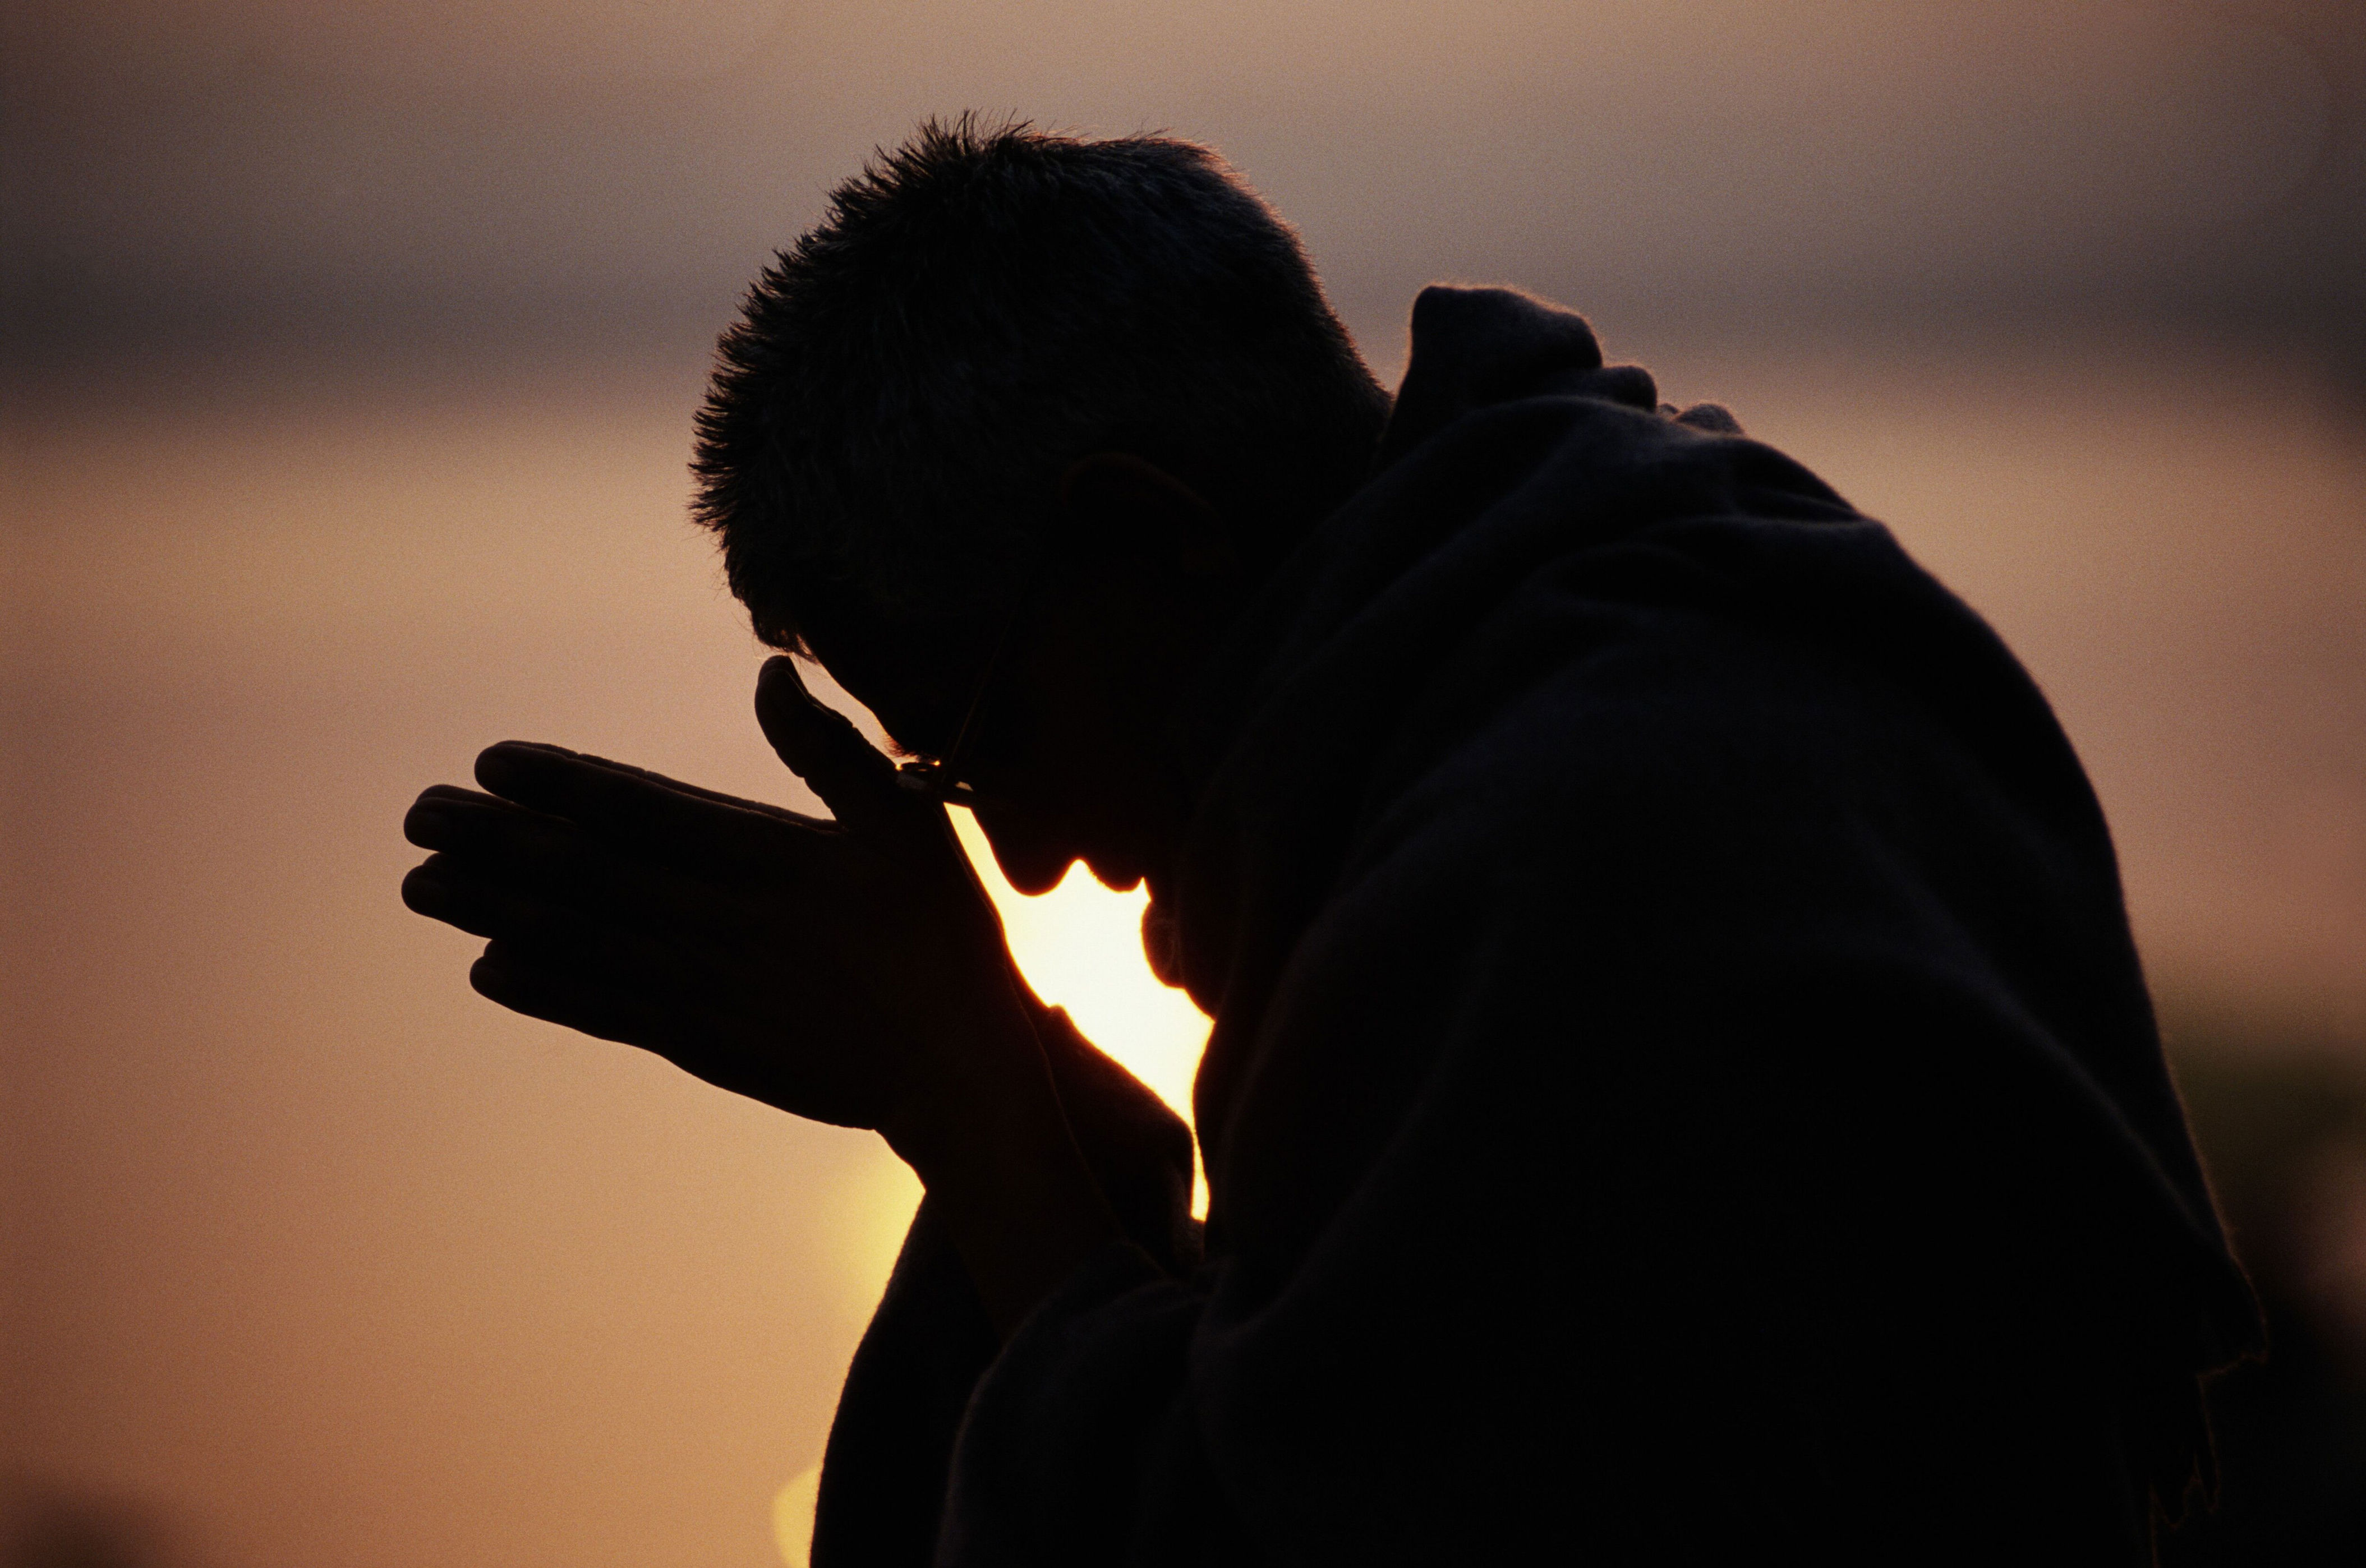 Признана раскаявшимся. Человек раскаивается. Мужчина молится. Человек молится Богу. Юноша молится.